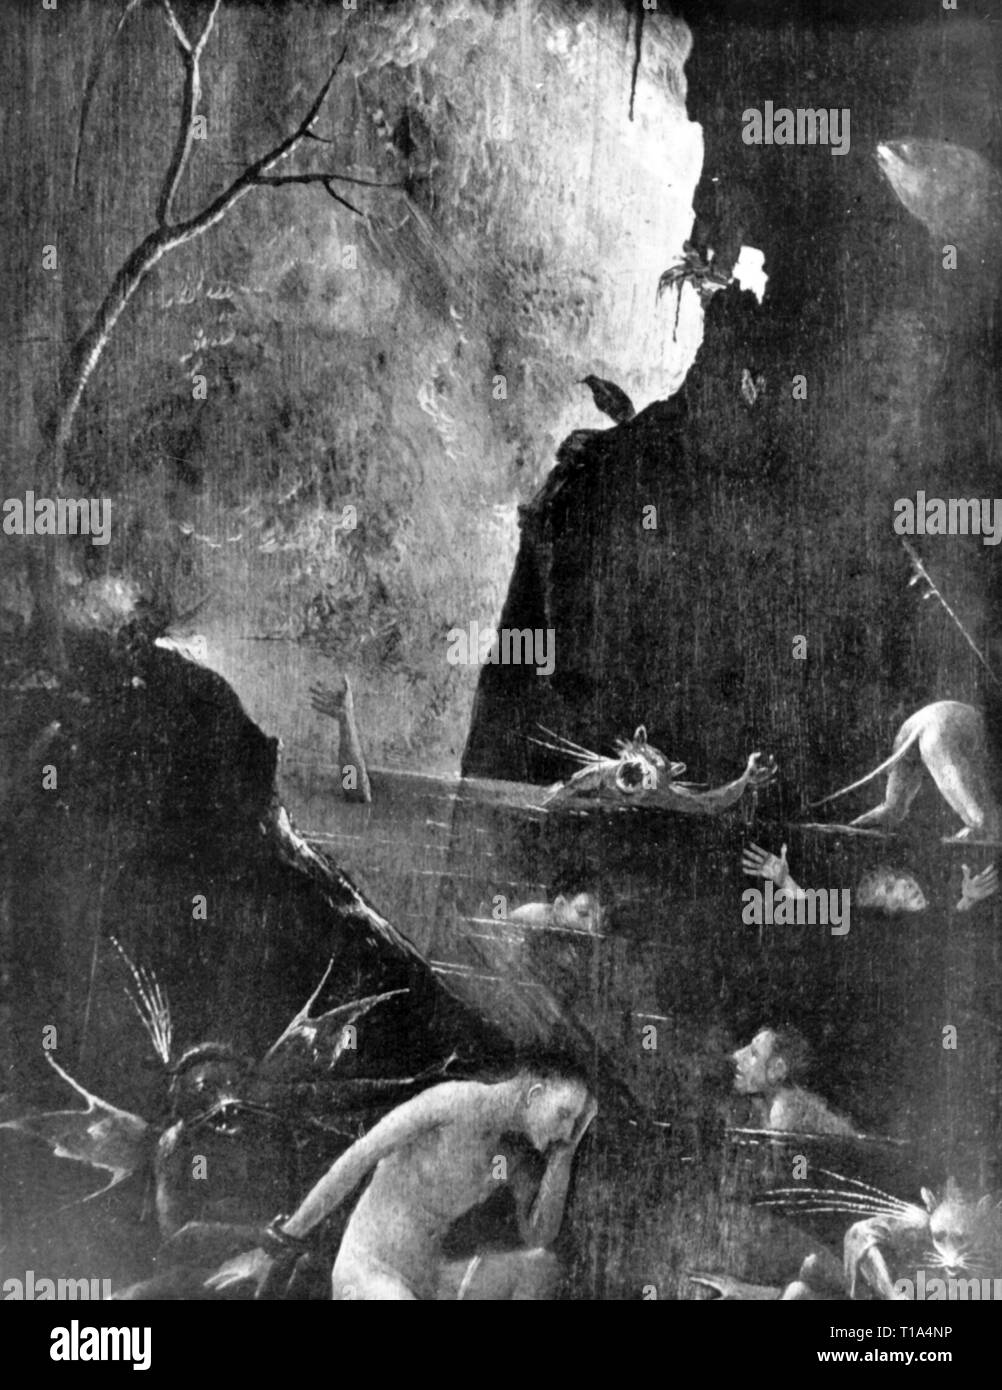 La religione, il cristianesimo, l'inferno, pittura, da Hieronymus Bosch (circa 1450 - 1516), 1505 - 1515, olio su pannello, dettaglio, Palazzo del Doge di Venezia, artista del diritto d'autore non deve essere cancellata Foto Stock